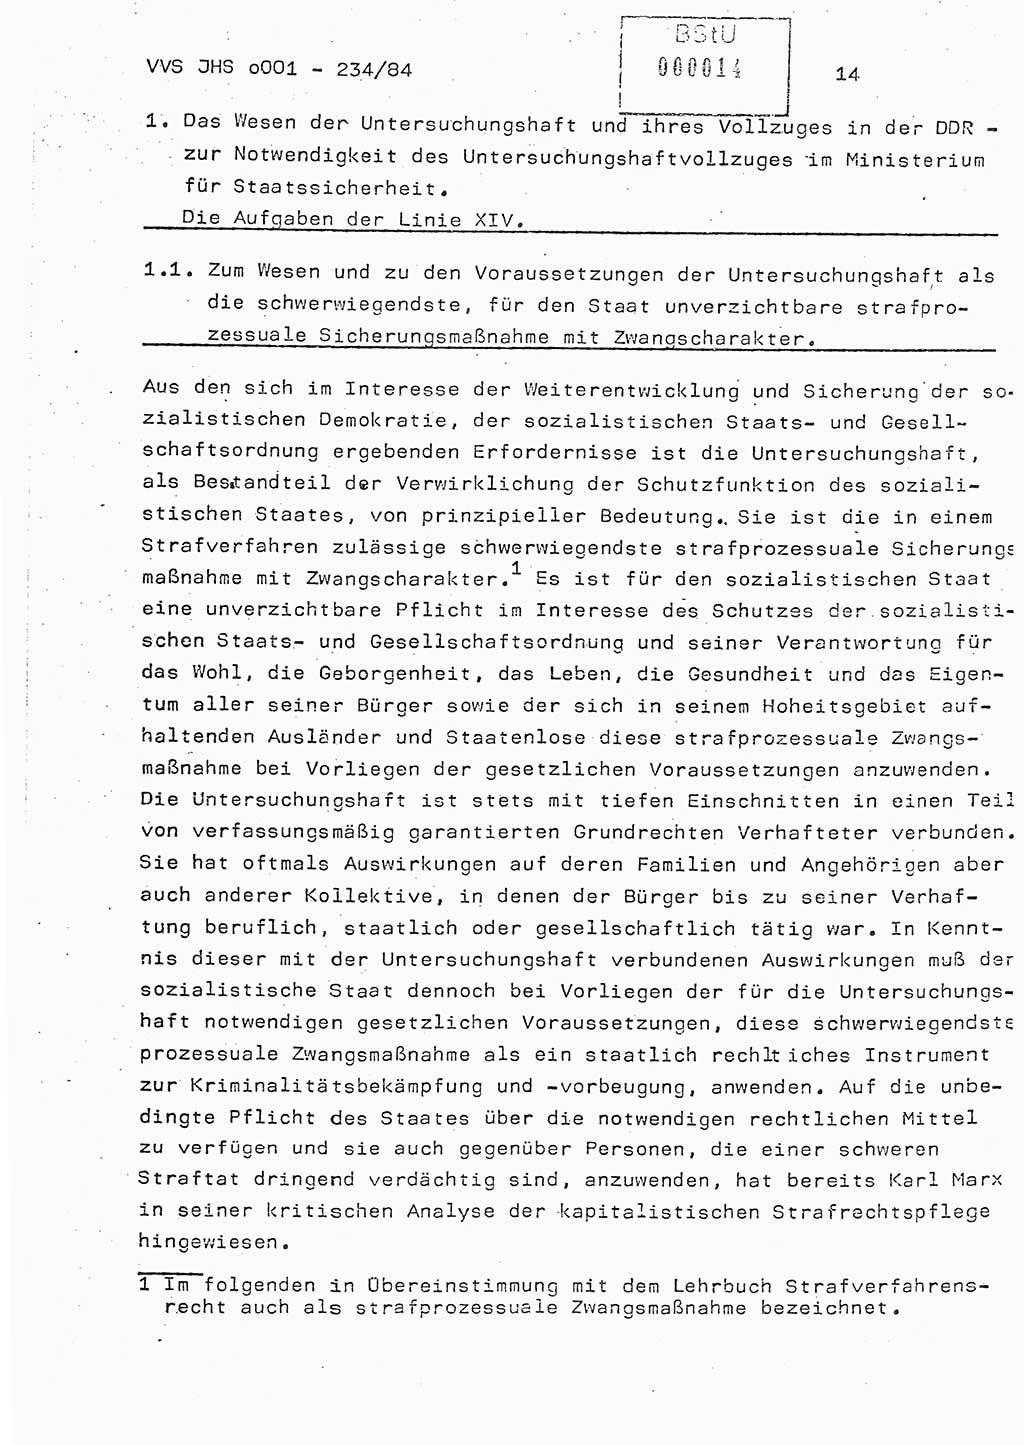 Dissertation Oberst Siegfried Rataizick (Abt. ⅩⅣ), Oberstleutnant Volkmar Heinz (Abt. ⅩⅣ), Oberstleutnant Werner Stein (HA Ⅸ), Hauptmann Heinz Conrad (JHS), Ministerium für Staatssicherheit (MfS) [Deutsche Demokratische Republik (DDR)], Juristische Hochschule (JHS), Vertrauliche Verschlußsache (VVS) o001-234/84, Potsdam 1984, Seite 14 (Diss. MfS DDR JHS VVS o001-234/84 1984, S. 14)